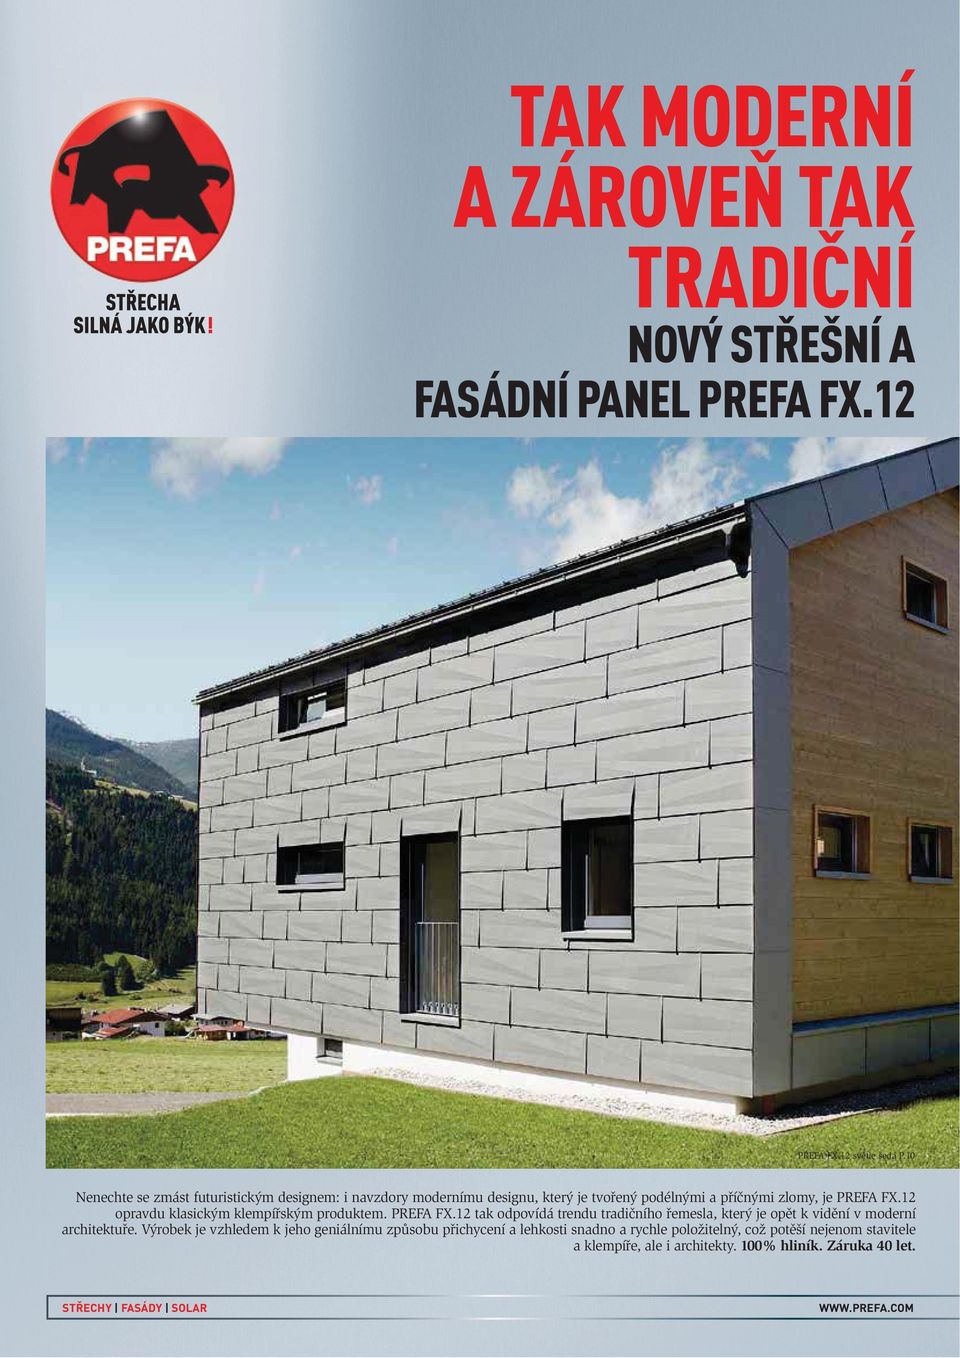 12 opravdu klasickým klempířským produktem. PREFA FX.12 tak odpovídá trendu tradičního řemesla, který je opět k vidění v moderní architektuře.